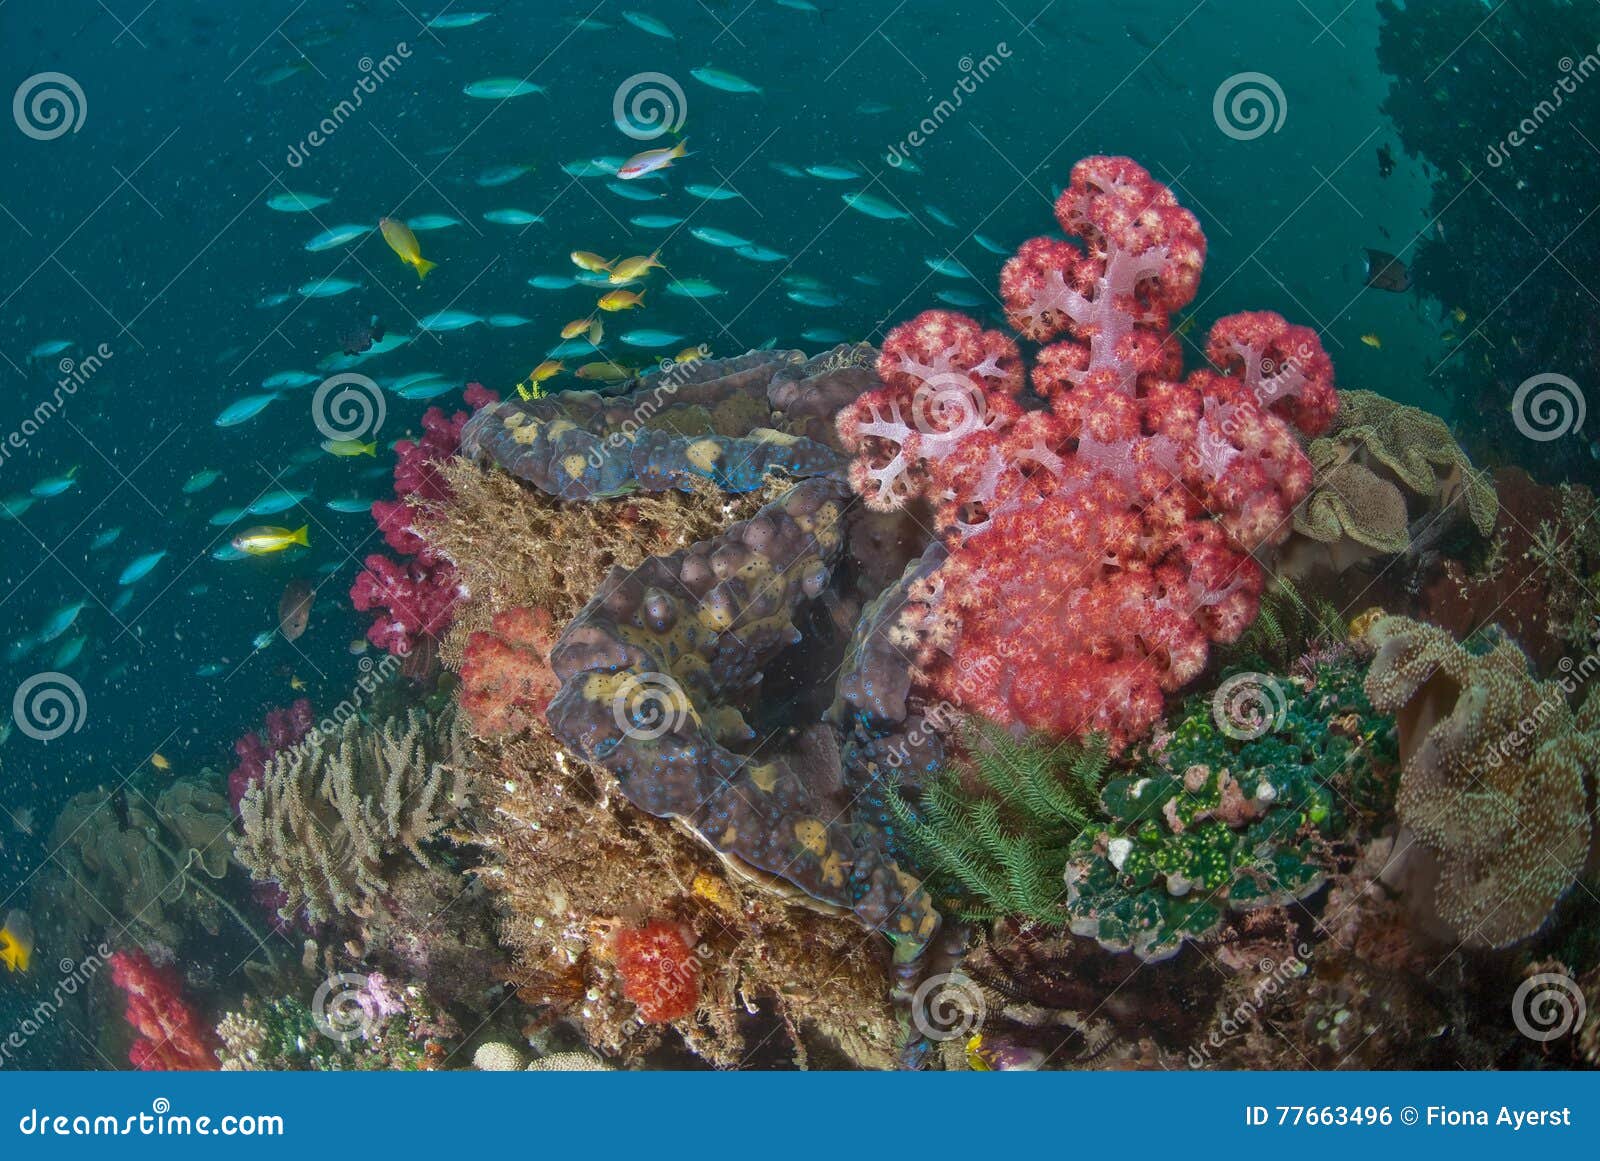 Γενική σκηνή σκοπέλων, Raja Ampat, Ινδονησία. Ένας σκόπελος στο σύνολο της Ινδονησίας των όμορφων λαμπρά χρωματισμένων κοραλλιών, που περιβάλλονται από τα μικρά μπλε και κίτρινα ψάρια